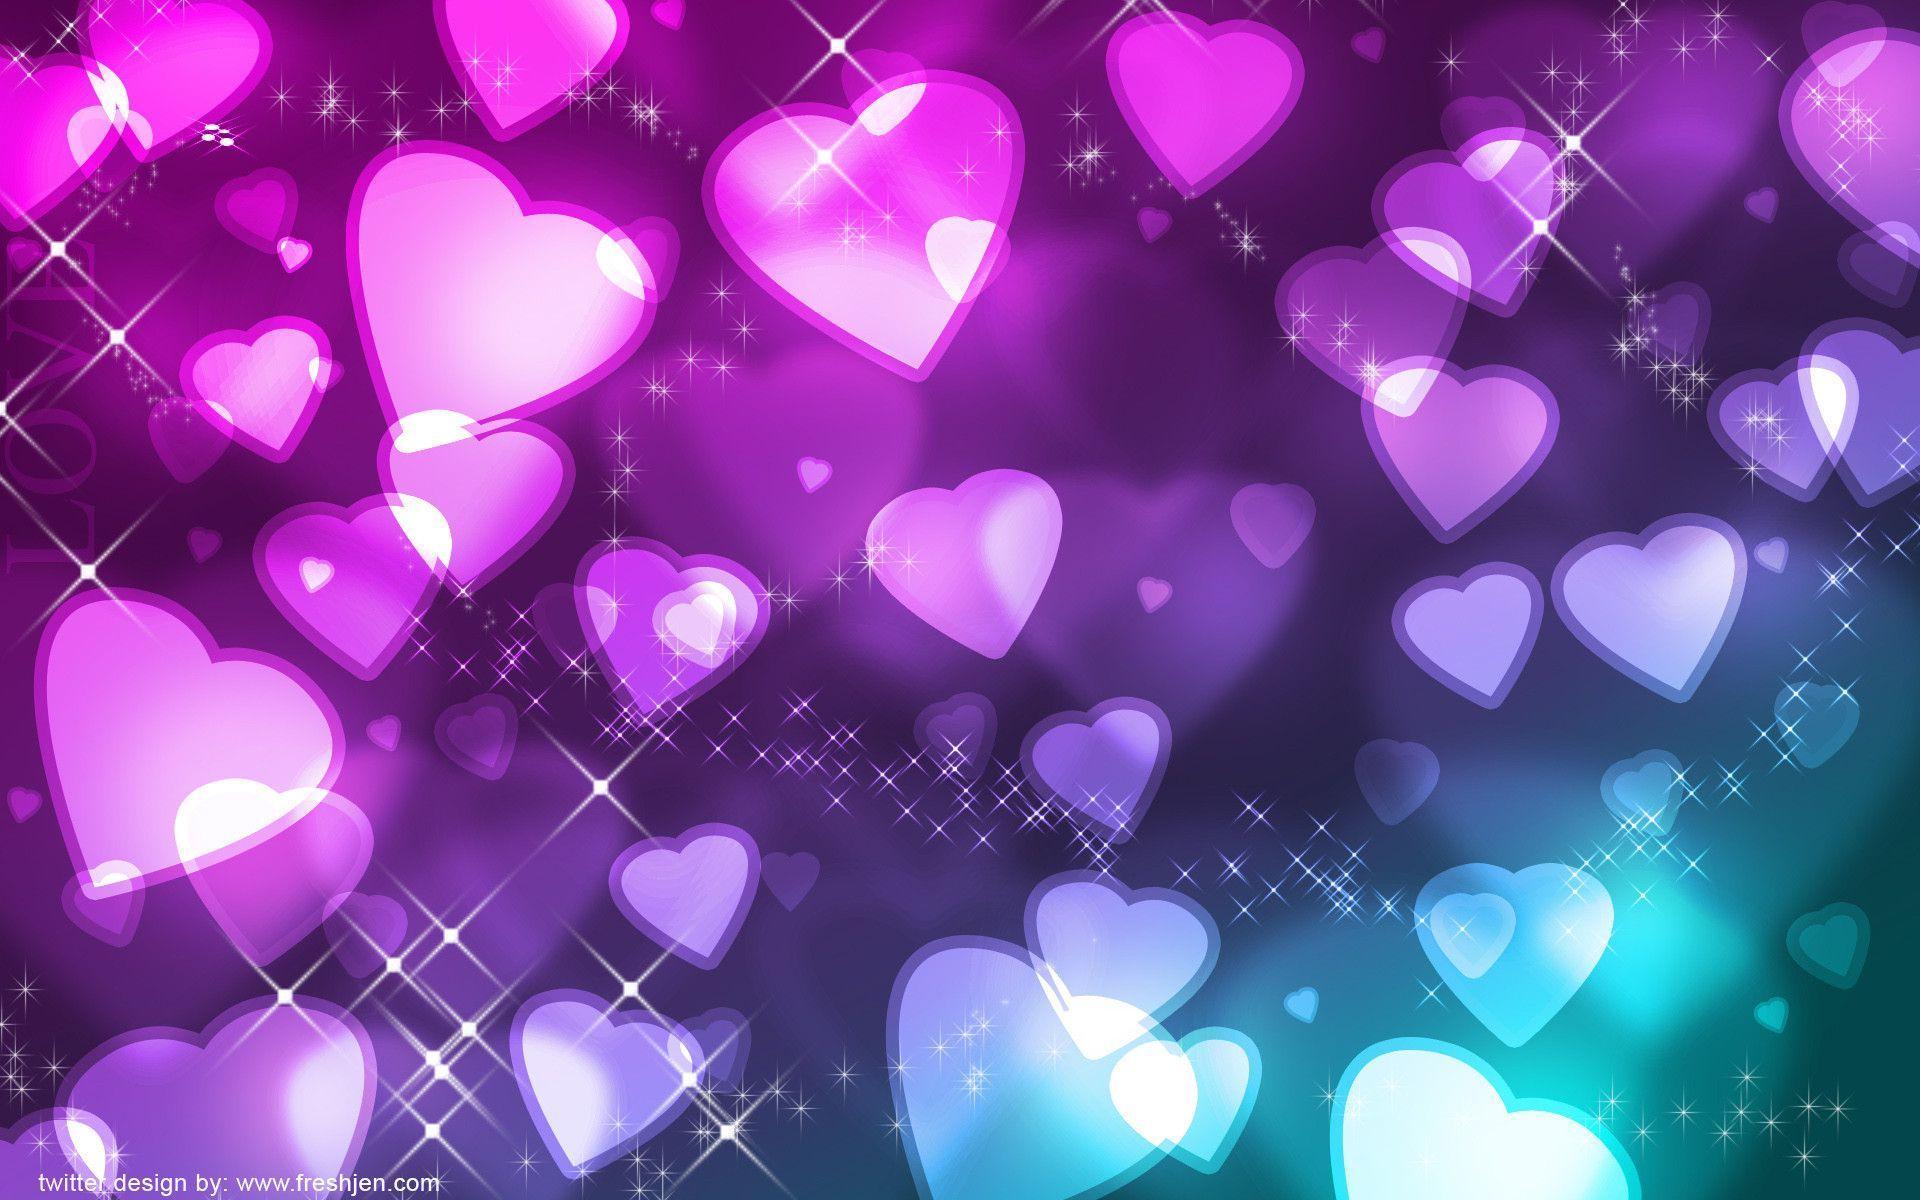 Cute Heart Wallpapers for Desktop  PixelsTalkNet